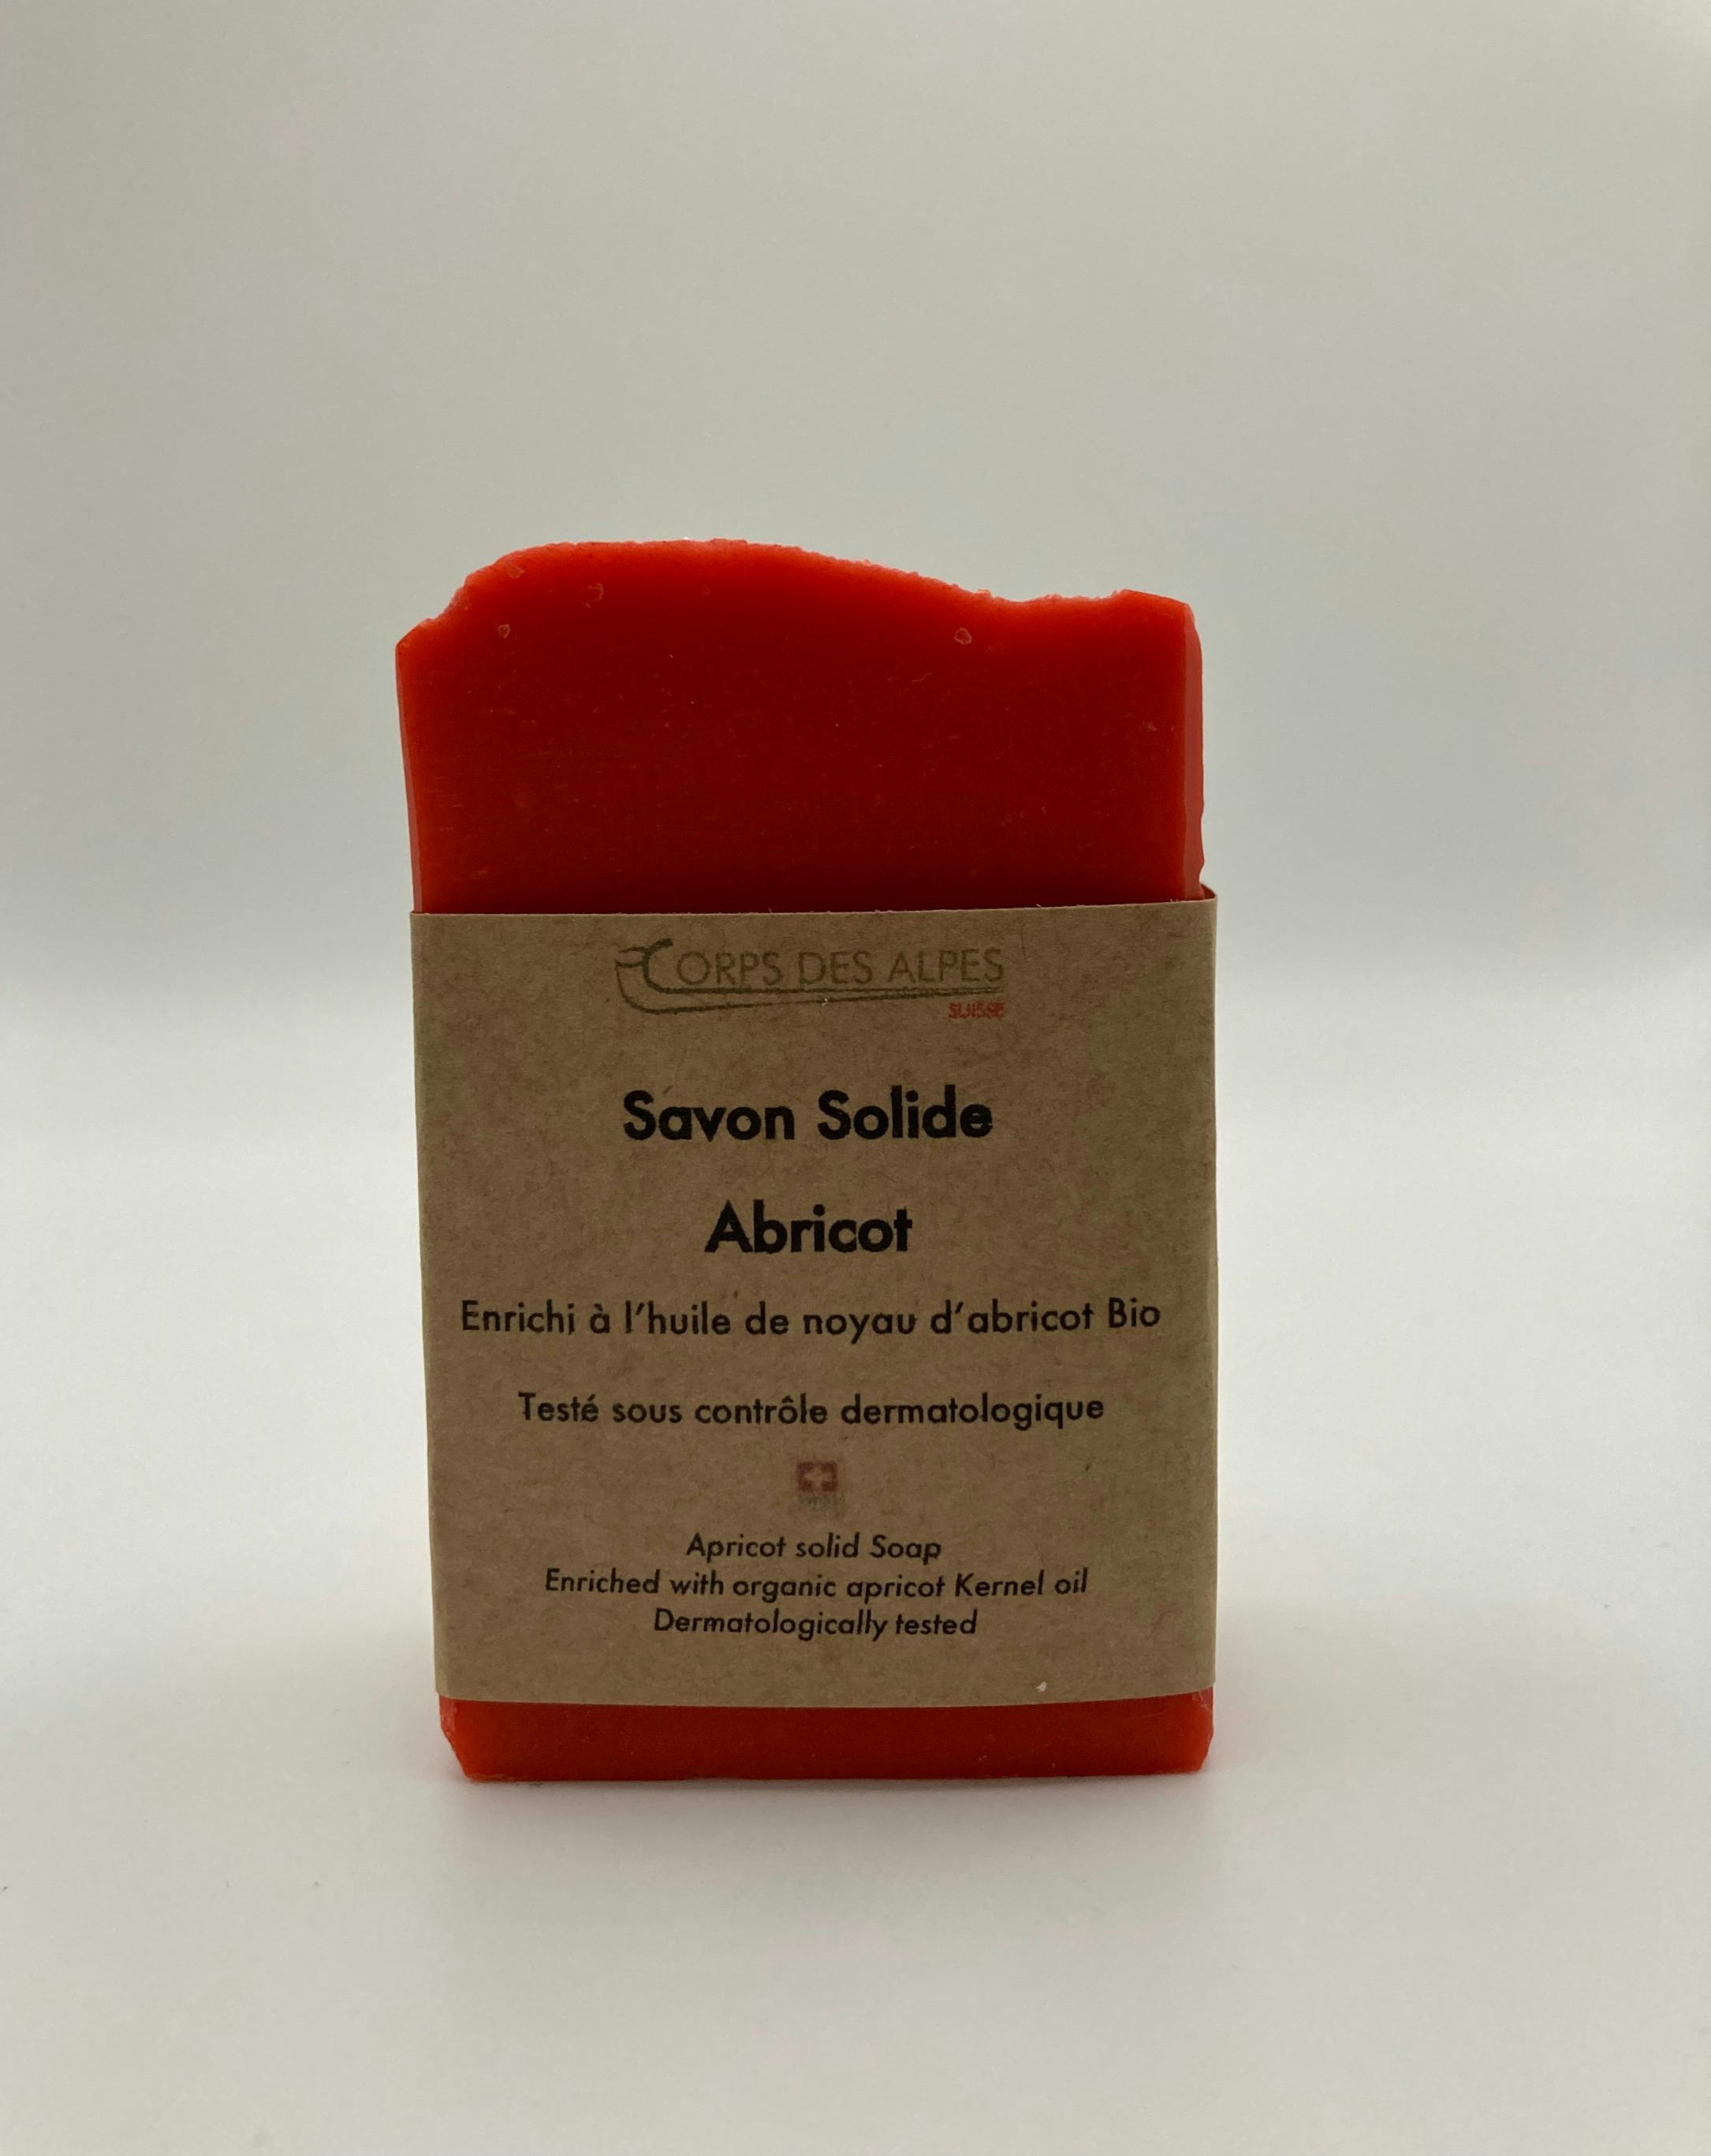 Savon Solide Abricot, handwerkliches Produkt für den Direktverkauf in der Schweiz